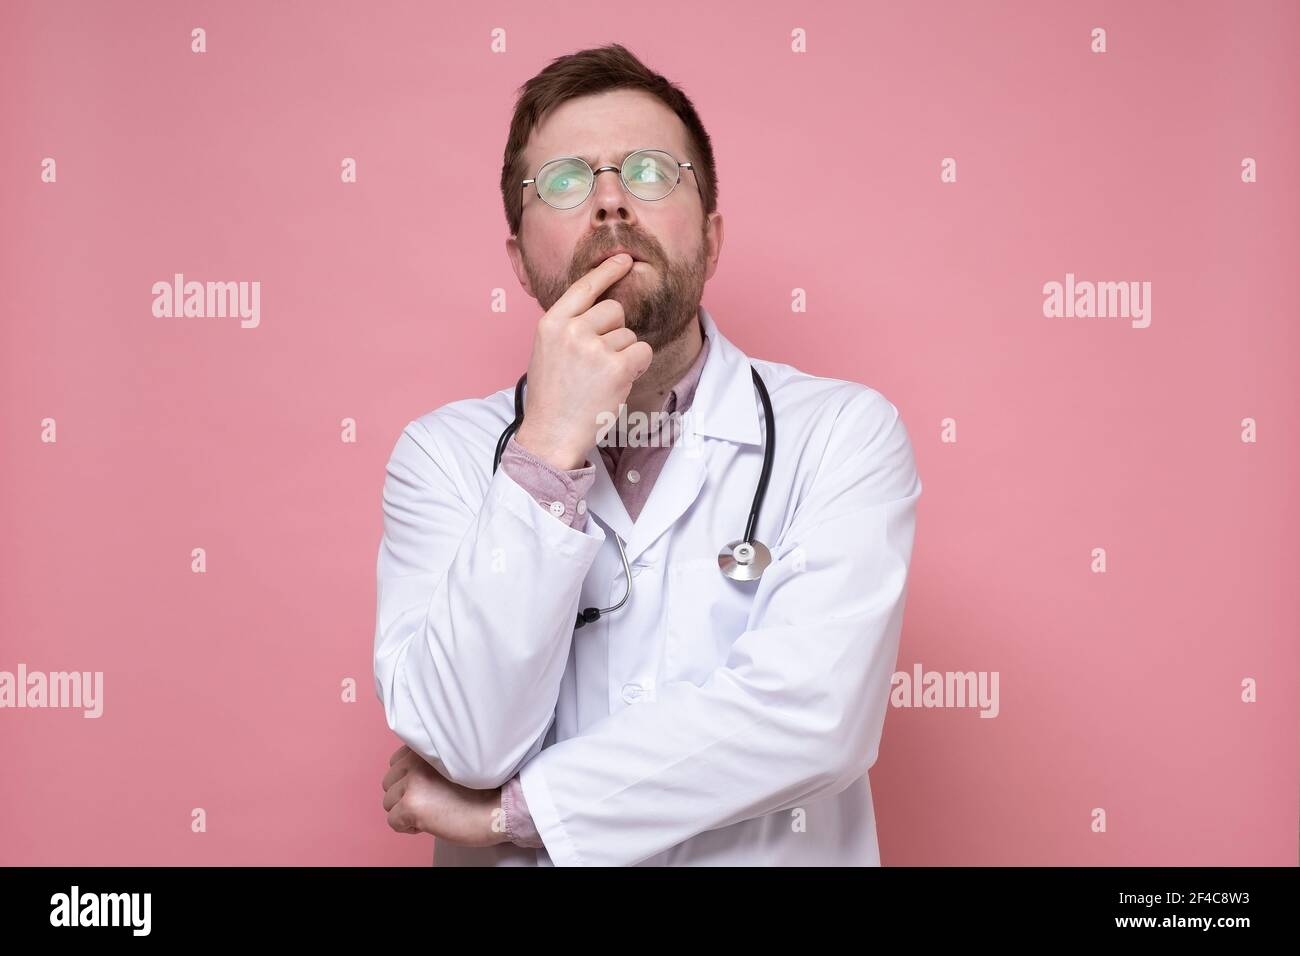 Rätselhafter Arzt mit Brille, einem weißen Mantel und einem Stethoskop um  den Hals sieht nachdenklich nach oben. Rosa Hintergrund Stockfotografie -  Alamy